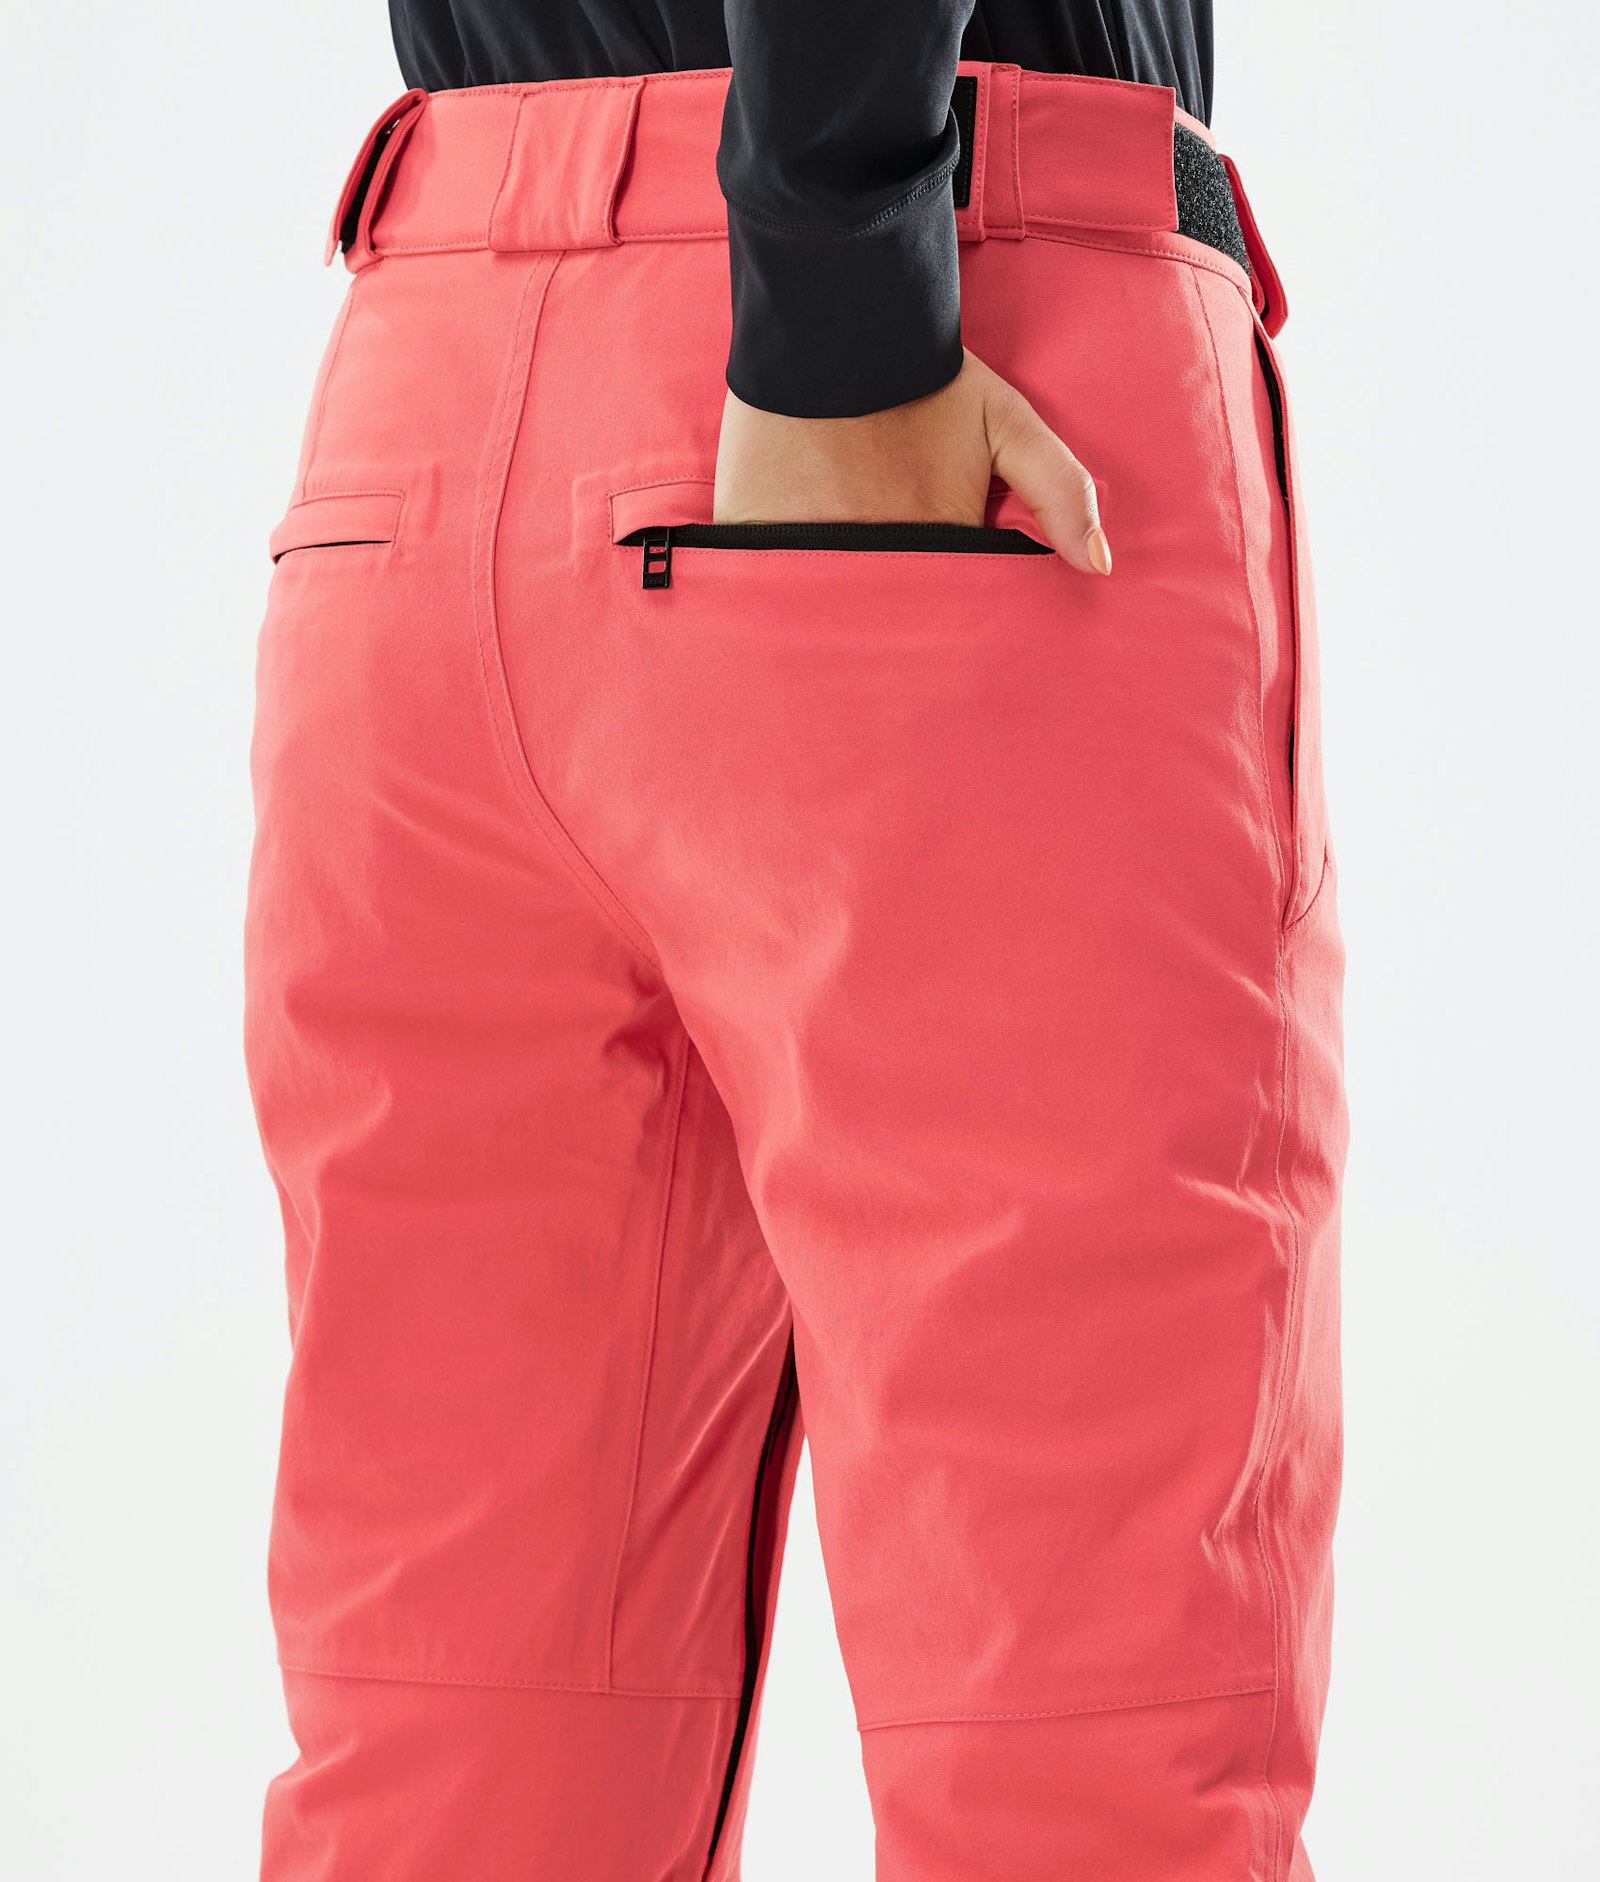 Con W 2021 Pantalon de Ski Femme Coral